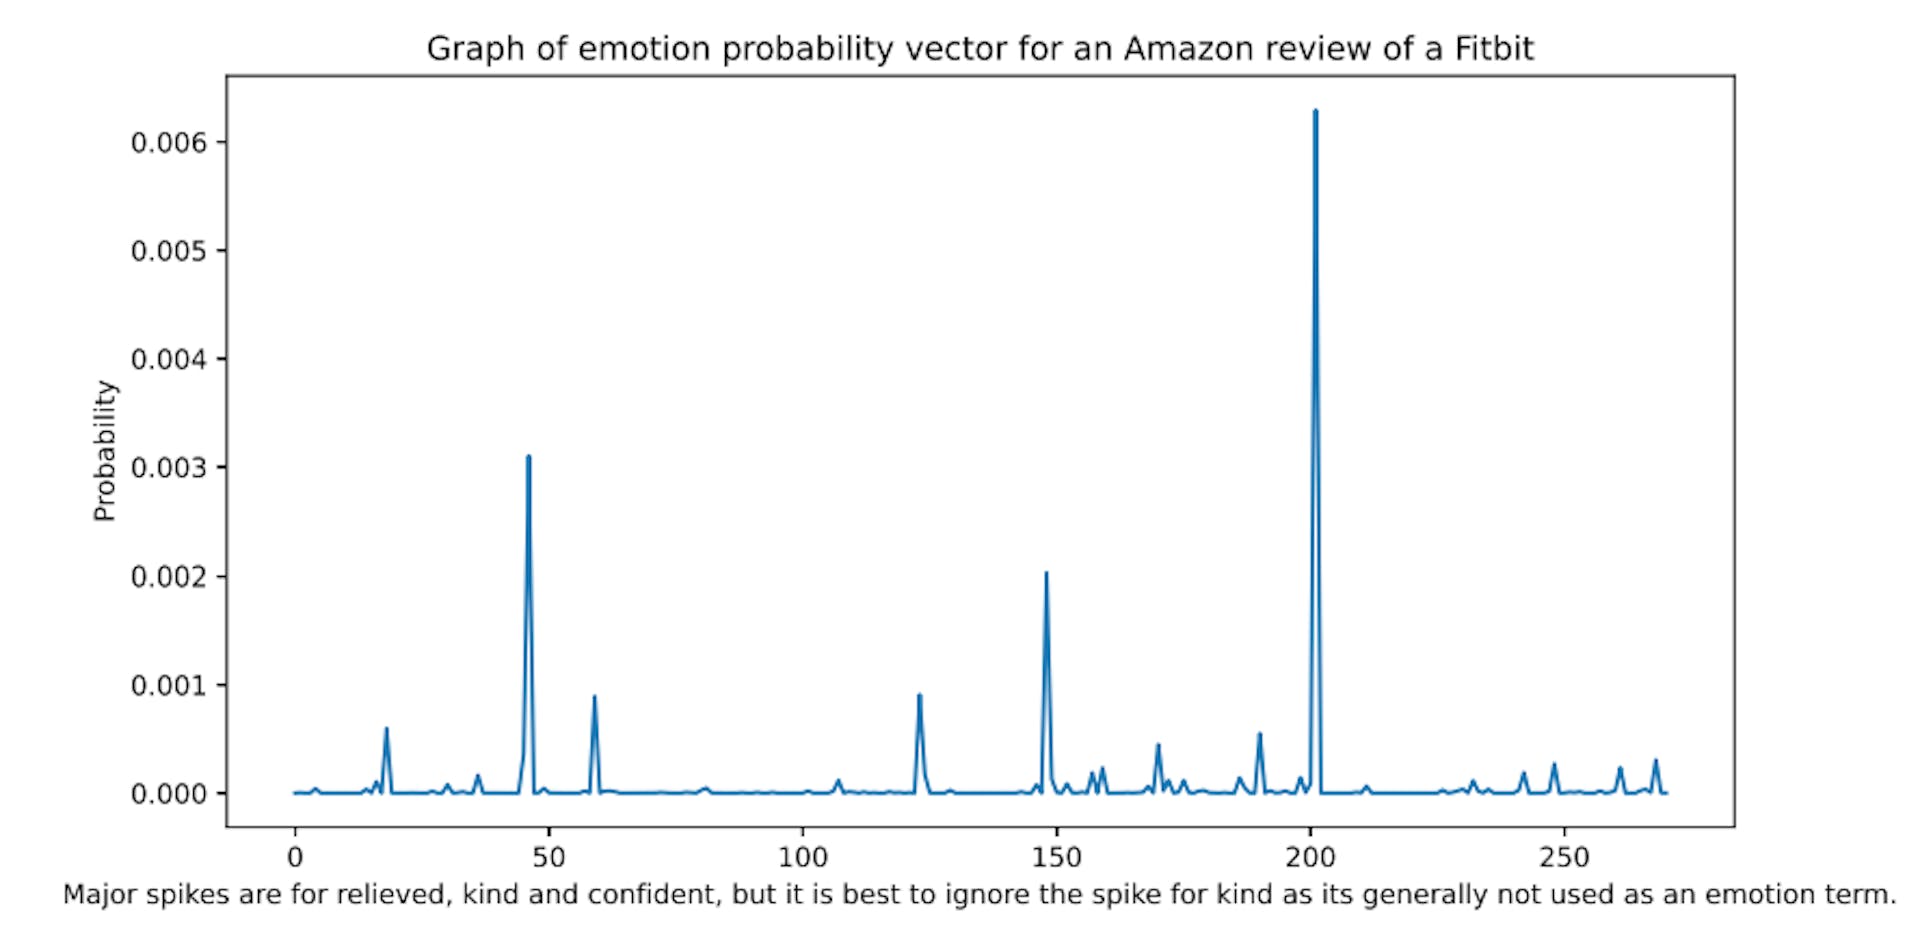 Abbildung 1: Beispiel für skalierte Emotionswörterbuchwahrscheinlichkeiten aus einer Amazon-Rezension. Die Wörterbuchwörter sind alphabetisch geordnet.